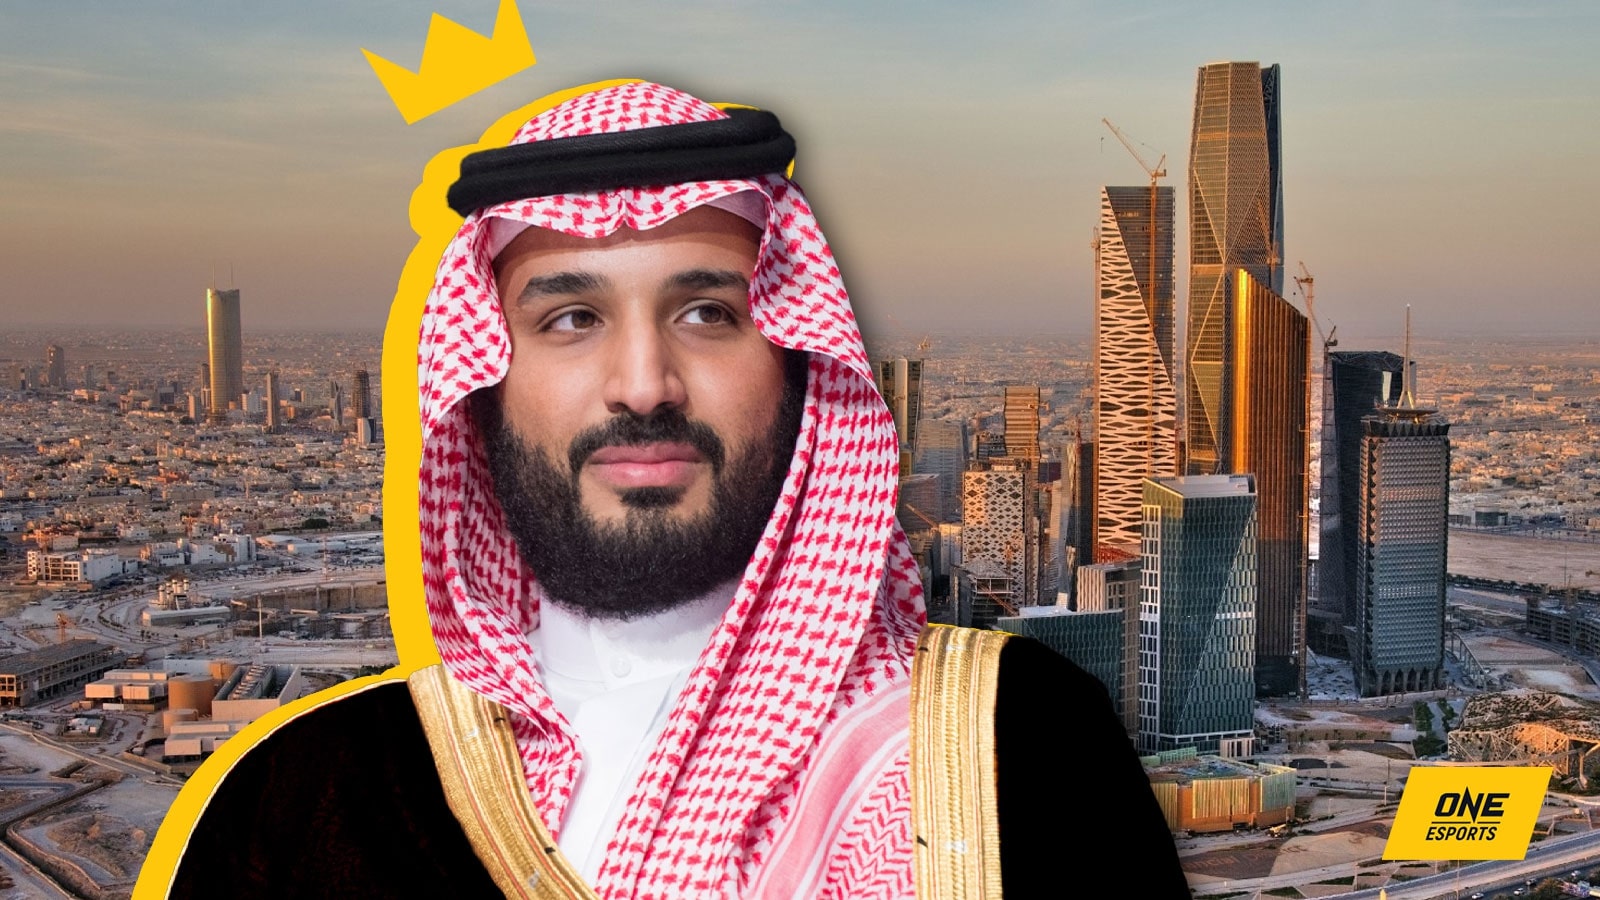 沙特阿拉伯即将启动的电子竞技城项目投资额达 5 亿美元